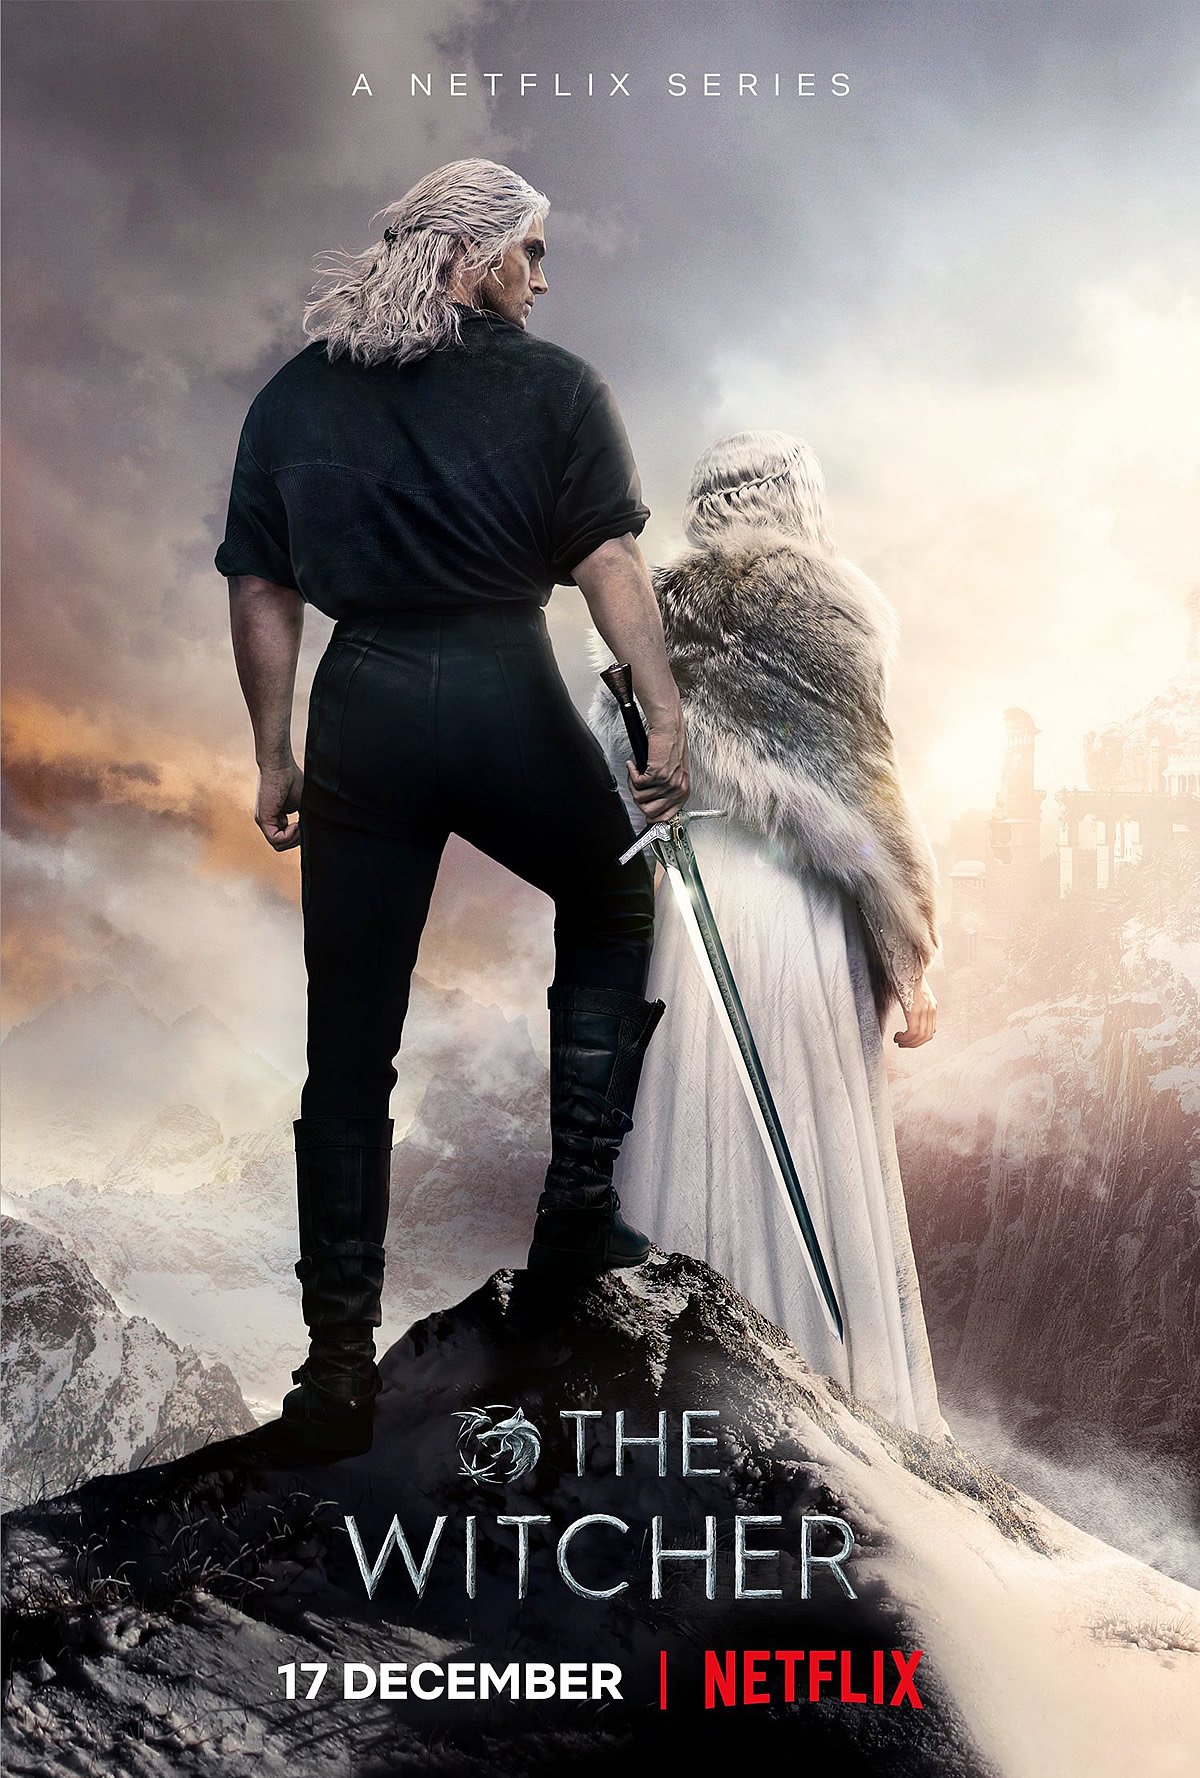 The Witcher Segunda Temporada | Netflix divuga novo trailer com destaque a Cirilla e Geralt